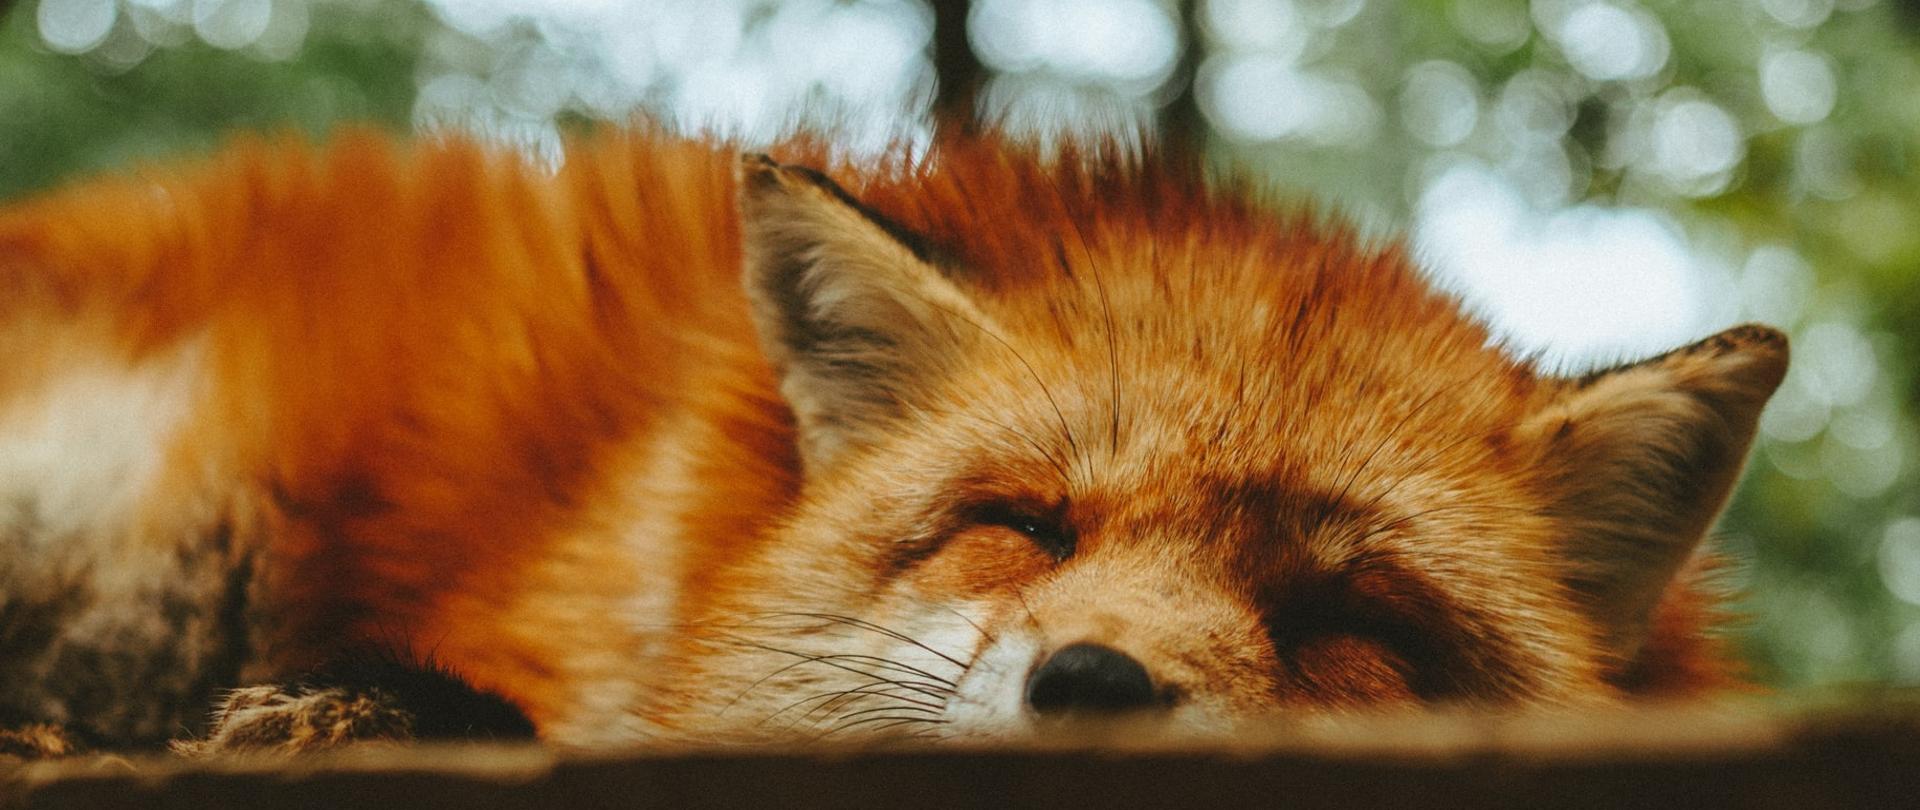 Zdjęcie przedstawiające śpiącego w lesie lisa